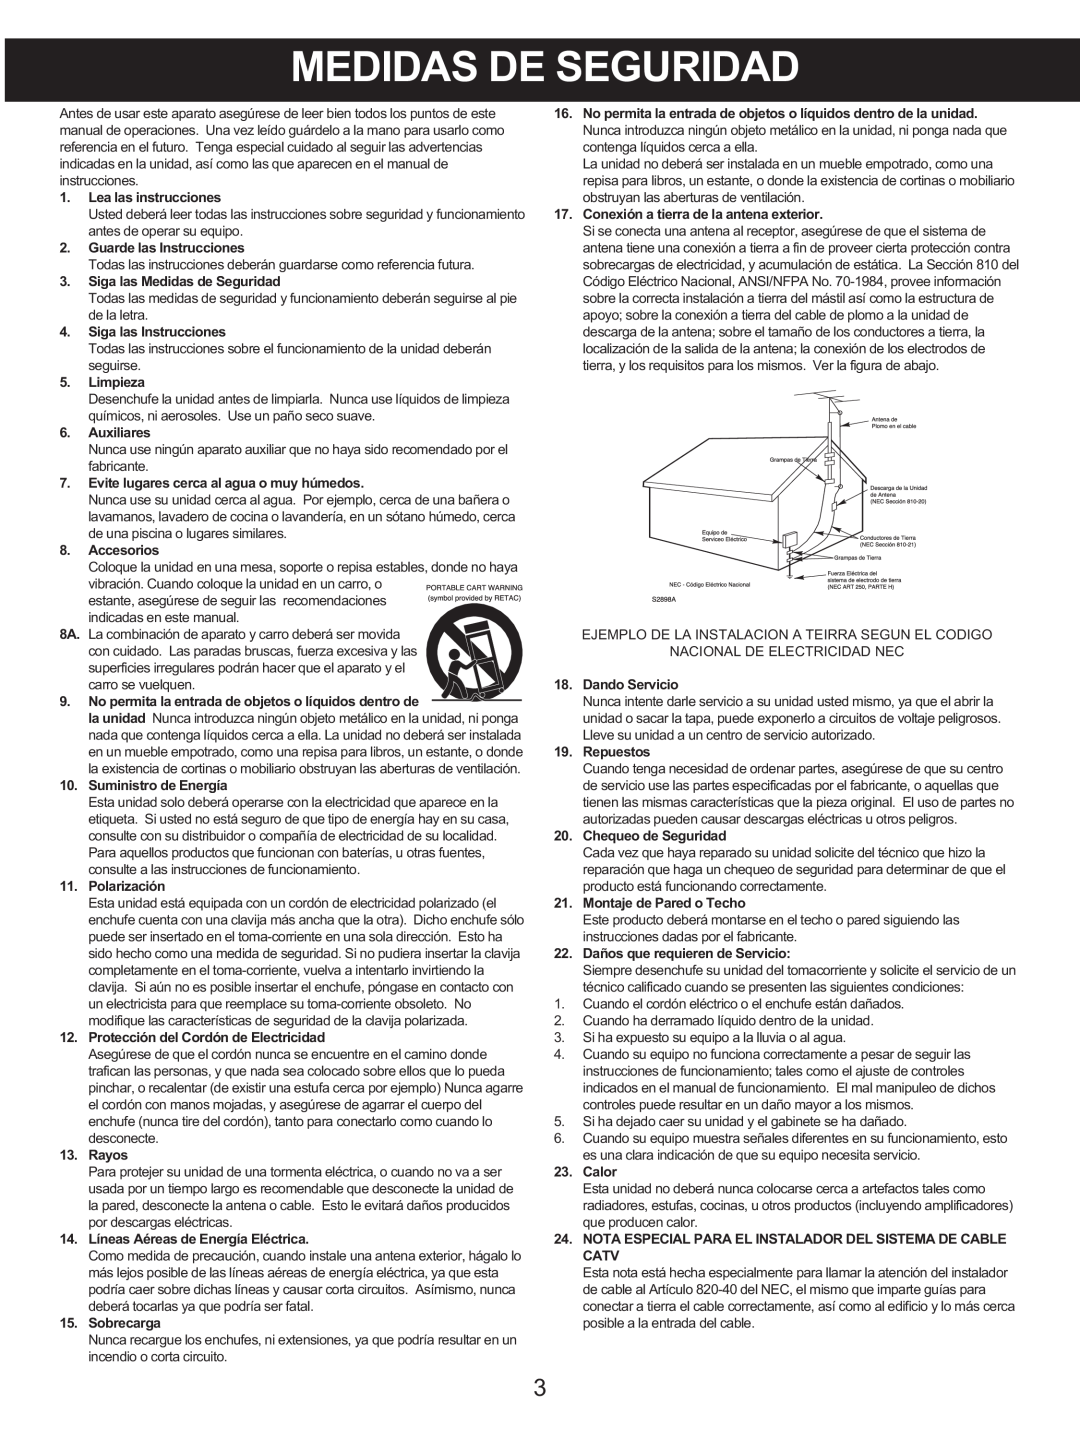 Memorex MX4139 manual Medidas De Seguridad 